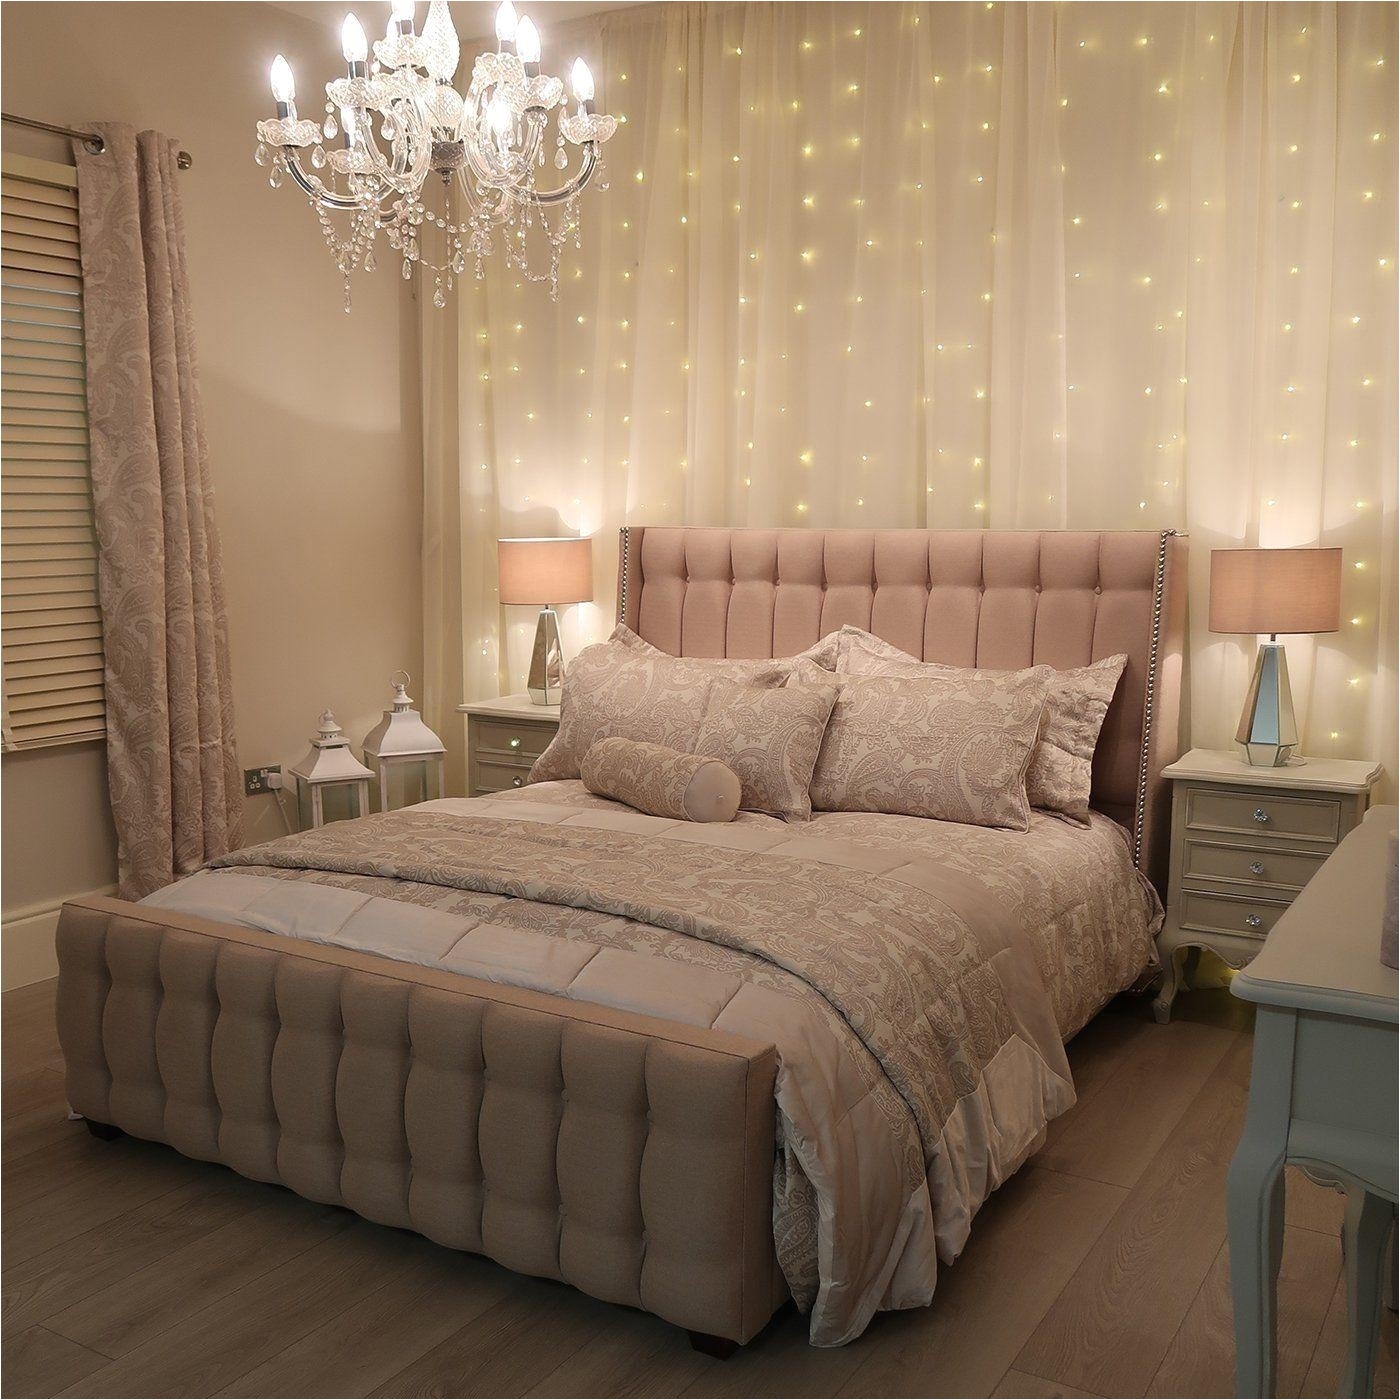 full size of home design macys comforter sets inspirational bedroom macys bedroom sets elegant indigo large size of home design macys comforter sets